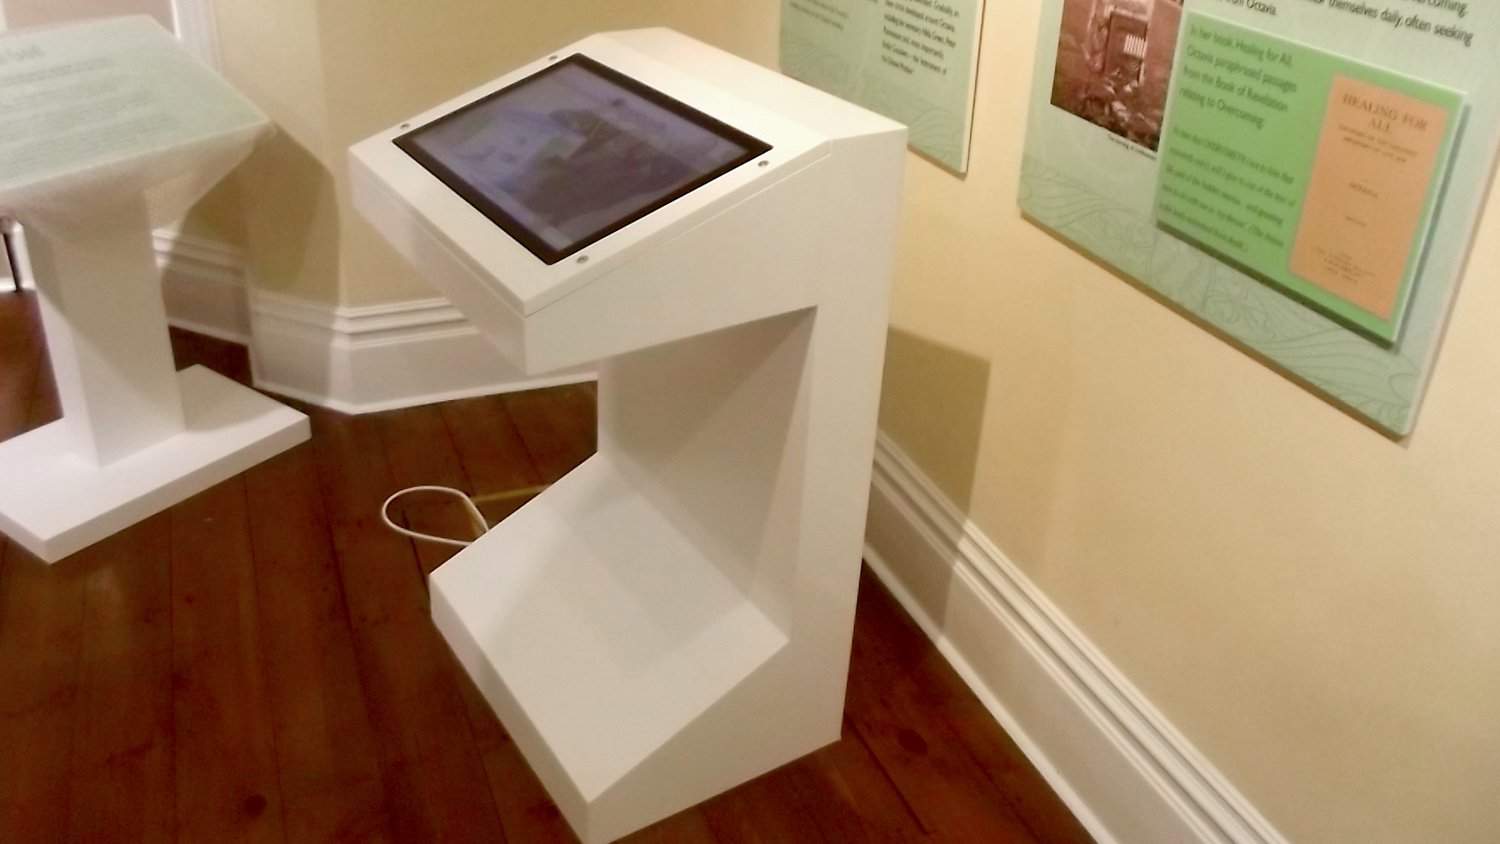 Multi Touch Screen Kiosk by Blackbox-av for Panacea Museum